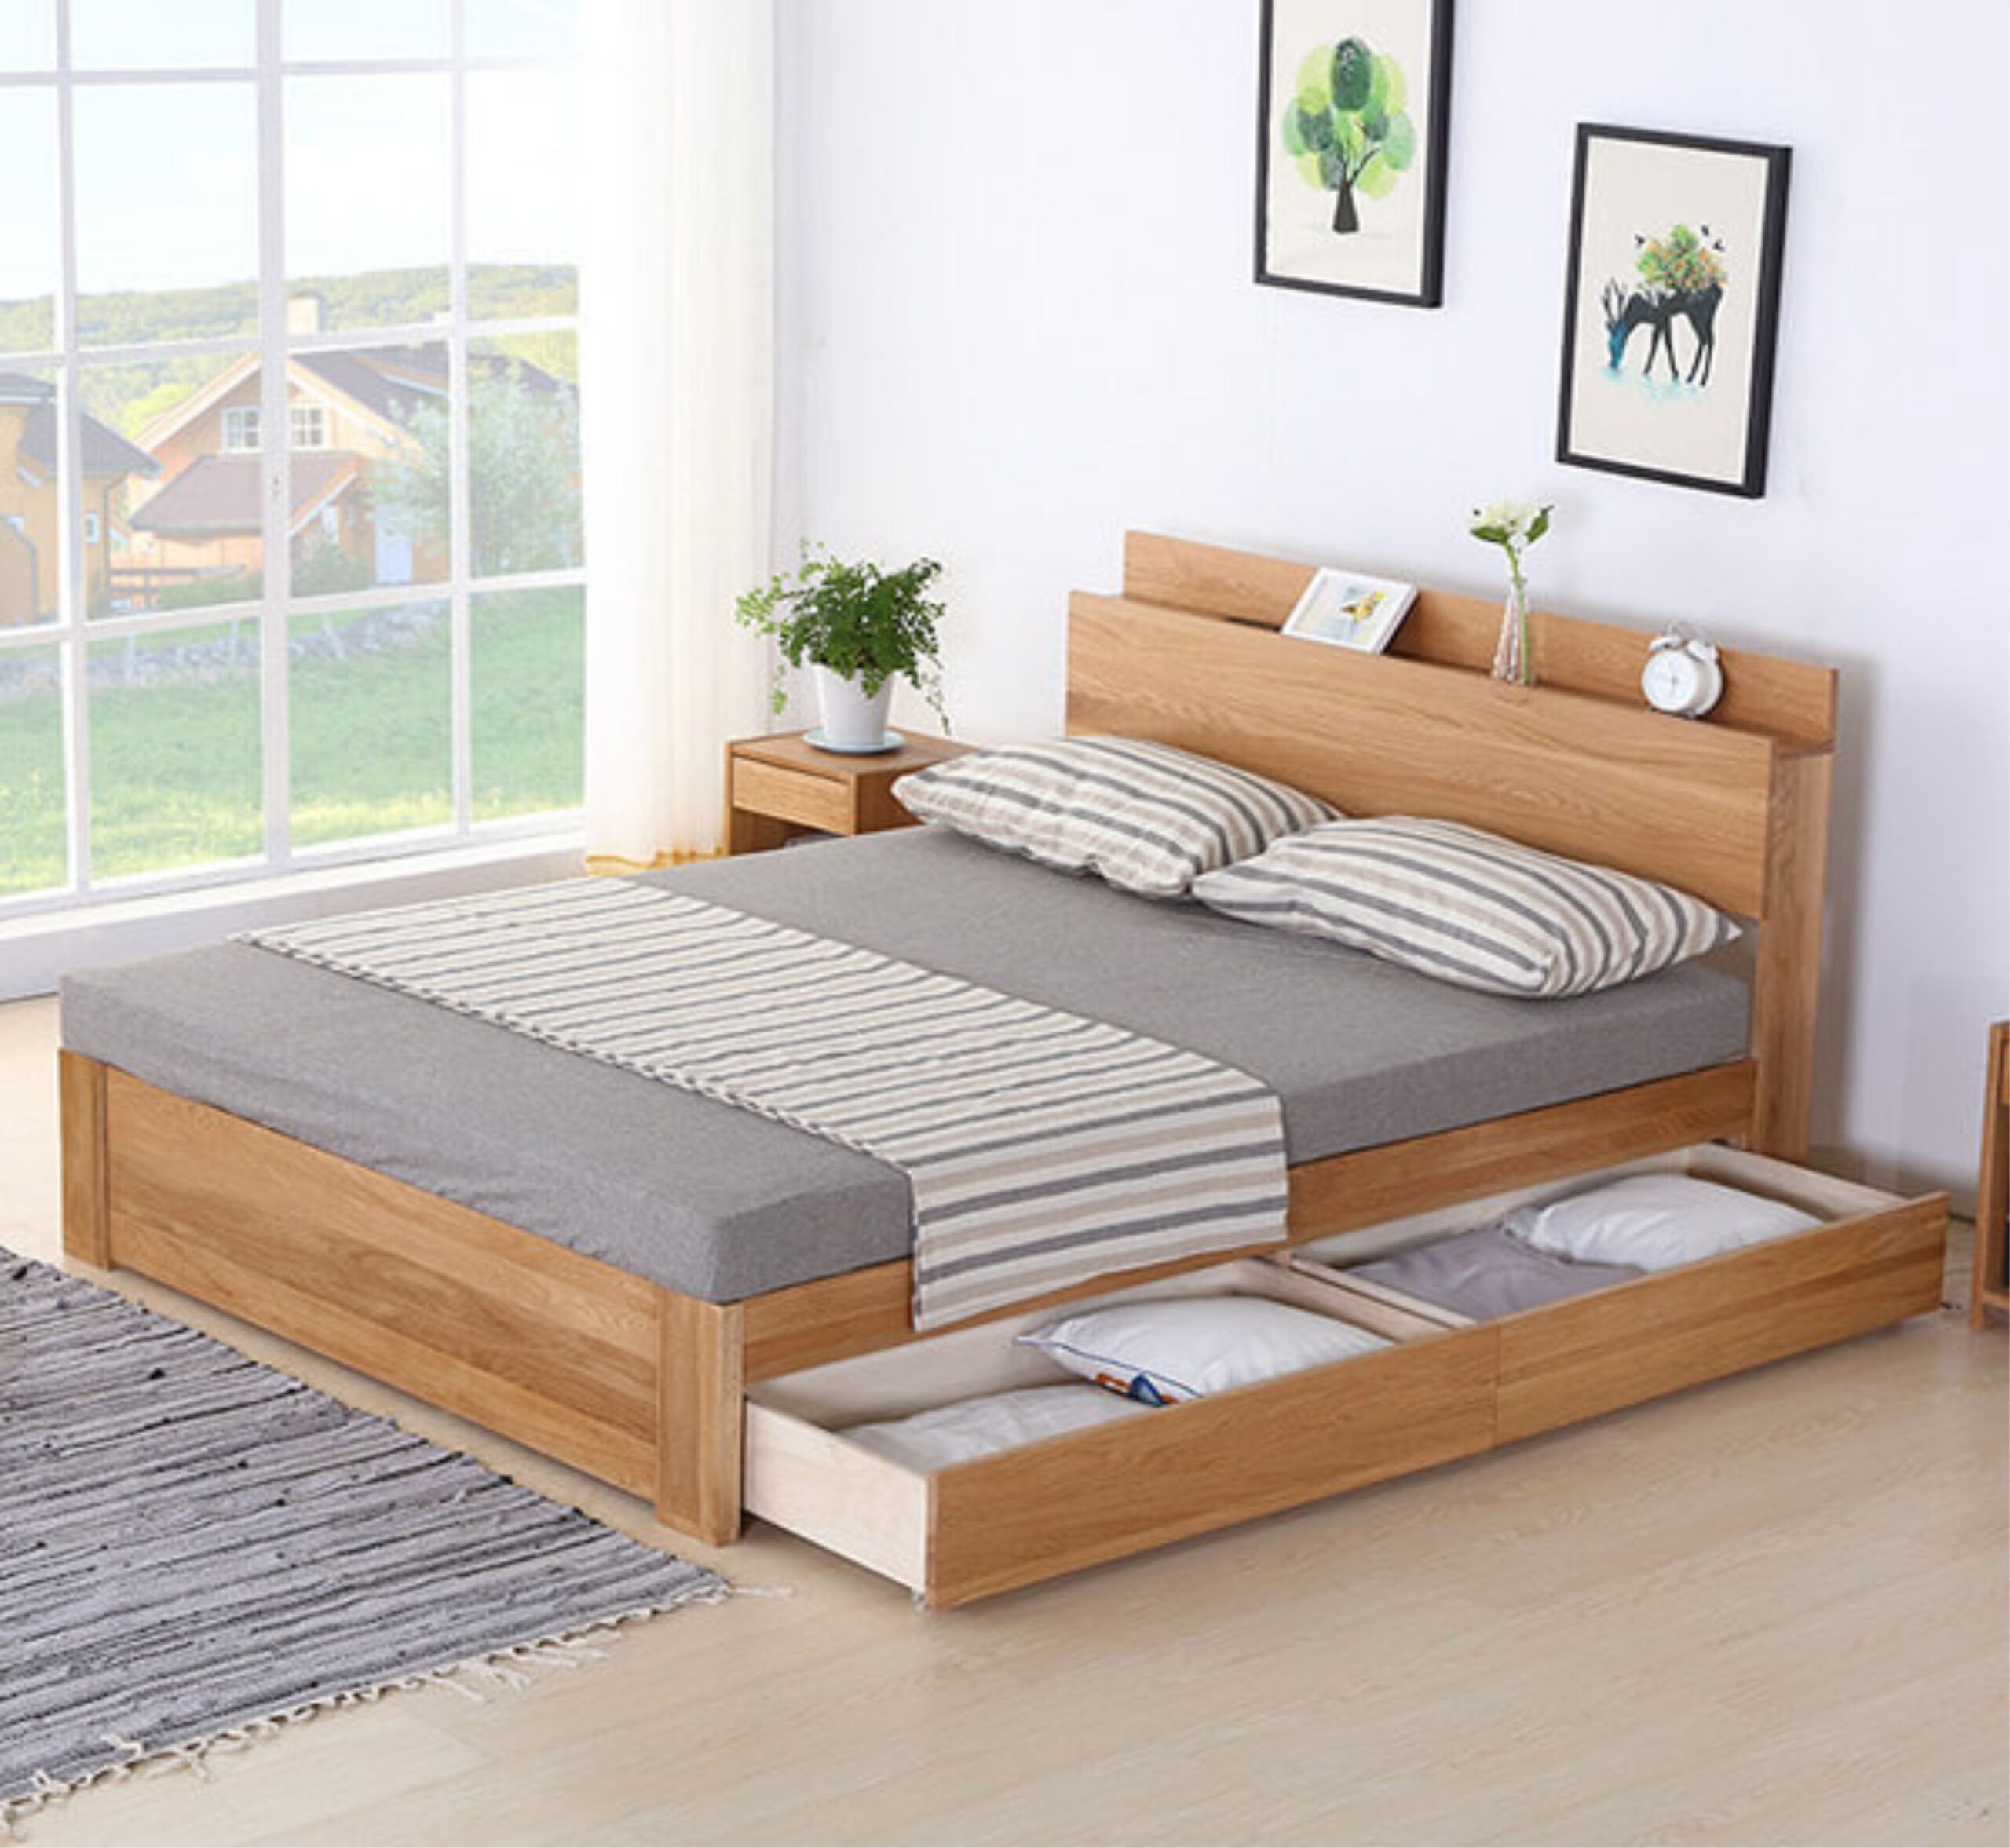 Mẫu giường bệt Hàn Quốc với 2 ngăn kéo bên dưới cho phòng ngủ luôn gọn gàng